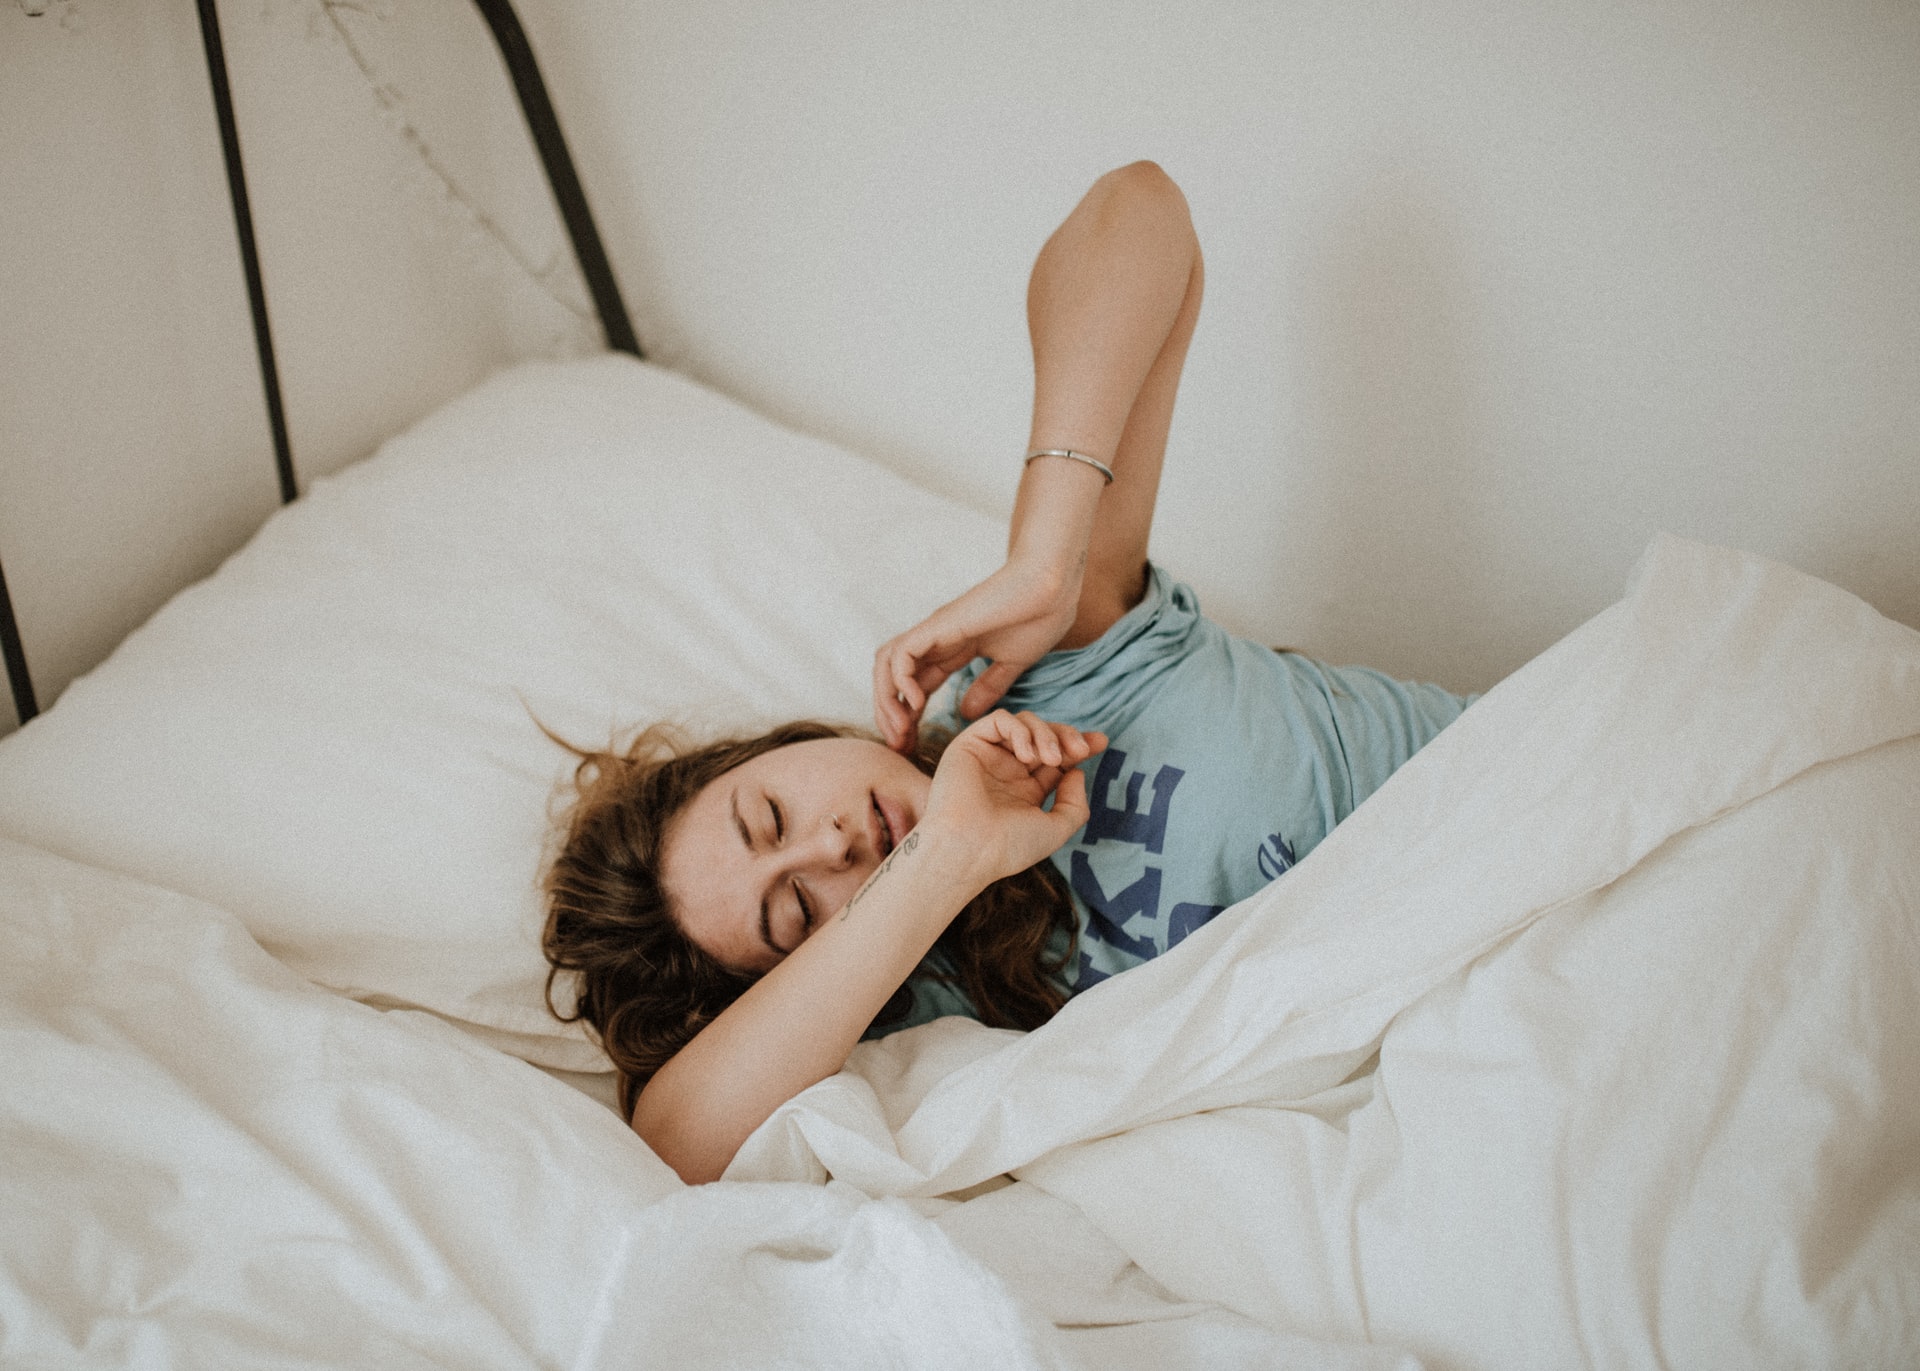 Παγκόσμια Ημέρα Ύπνου: Πόσες ώρες ύπνου χρειαζόμαστε πραγματικά καθημερινά;